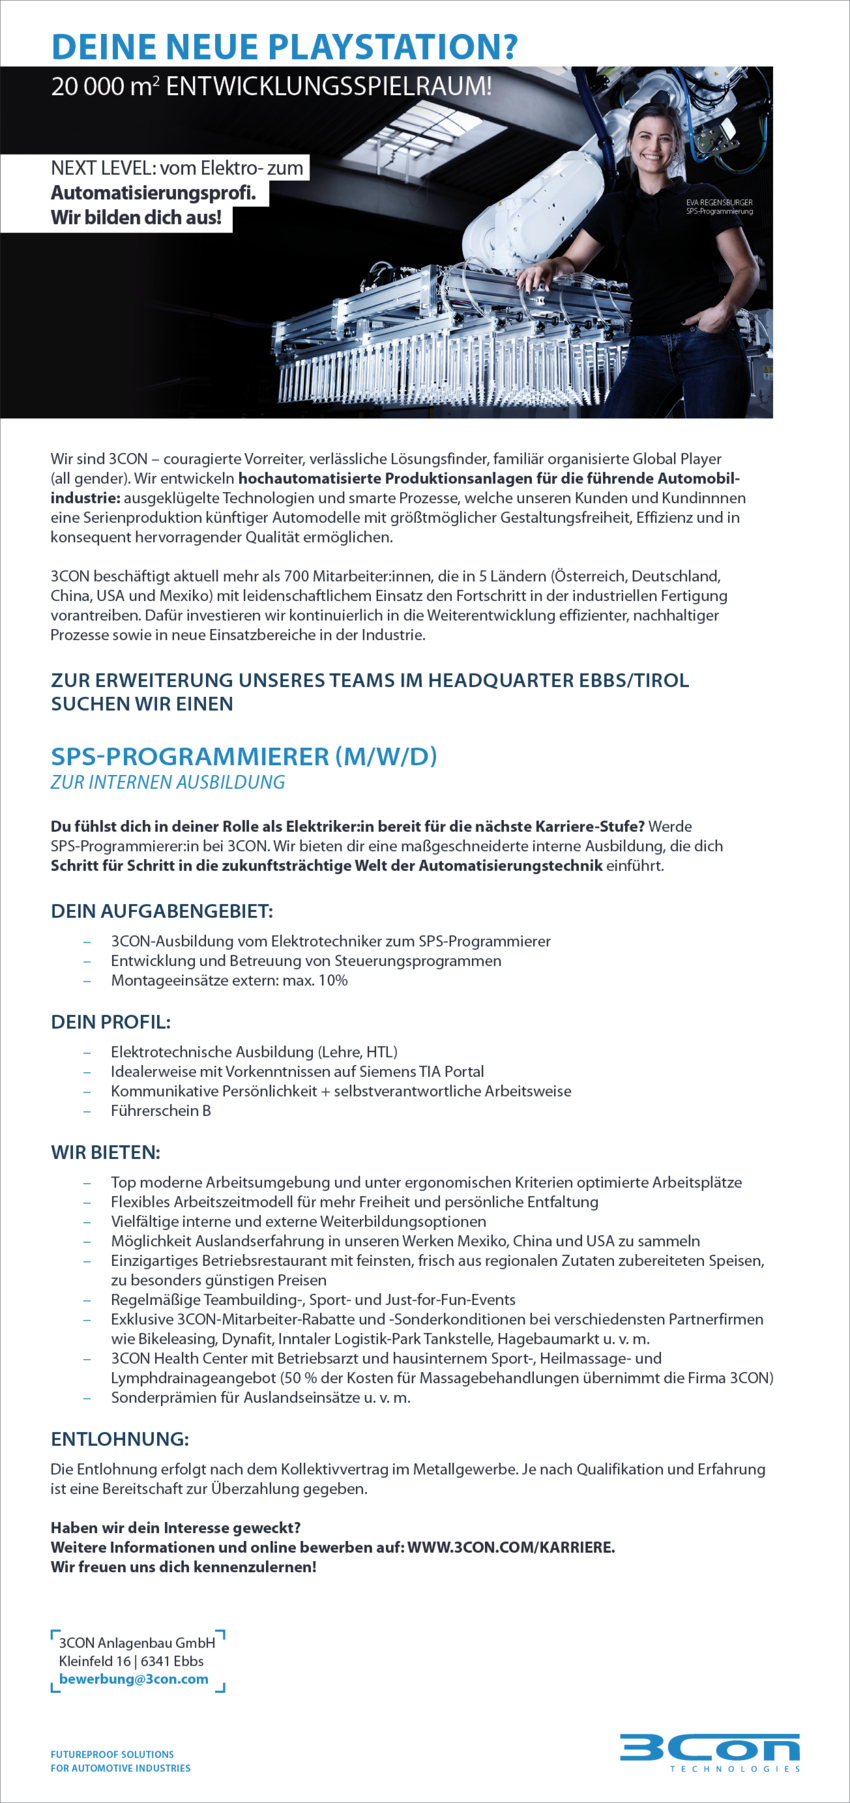 SPS-Programmierer (M/W/D) zur internen Ausbildung 